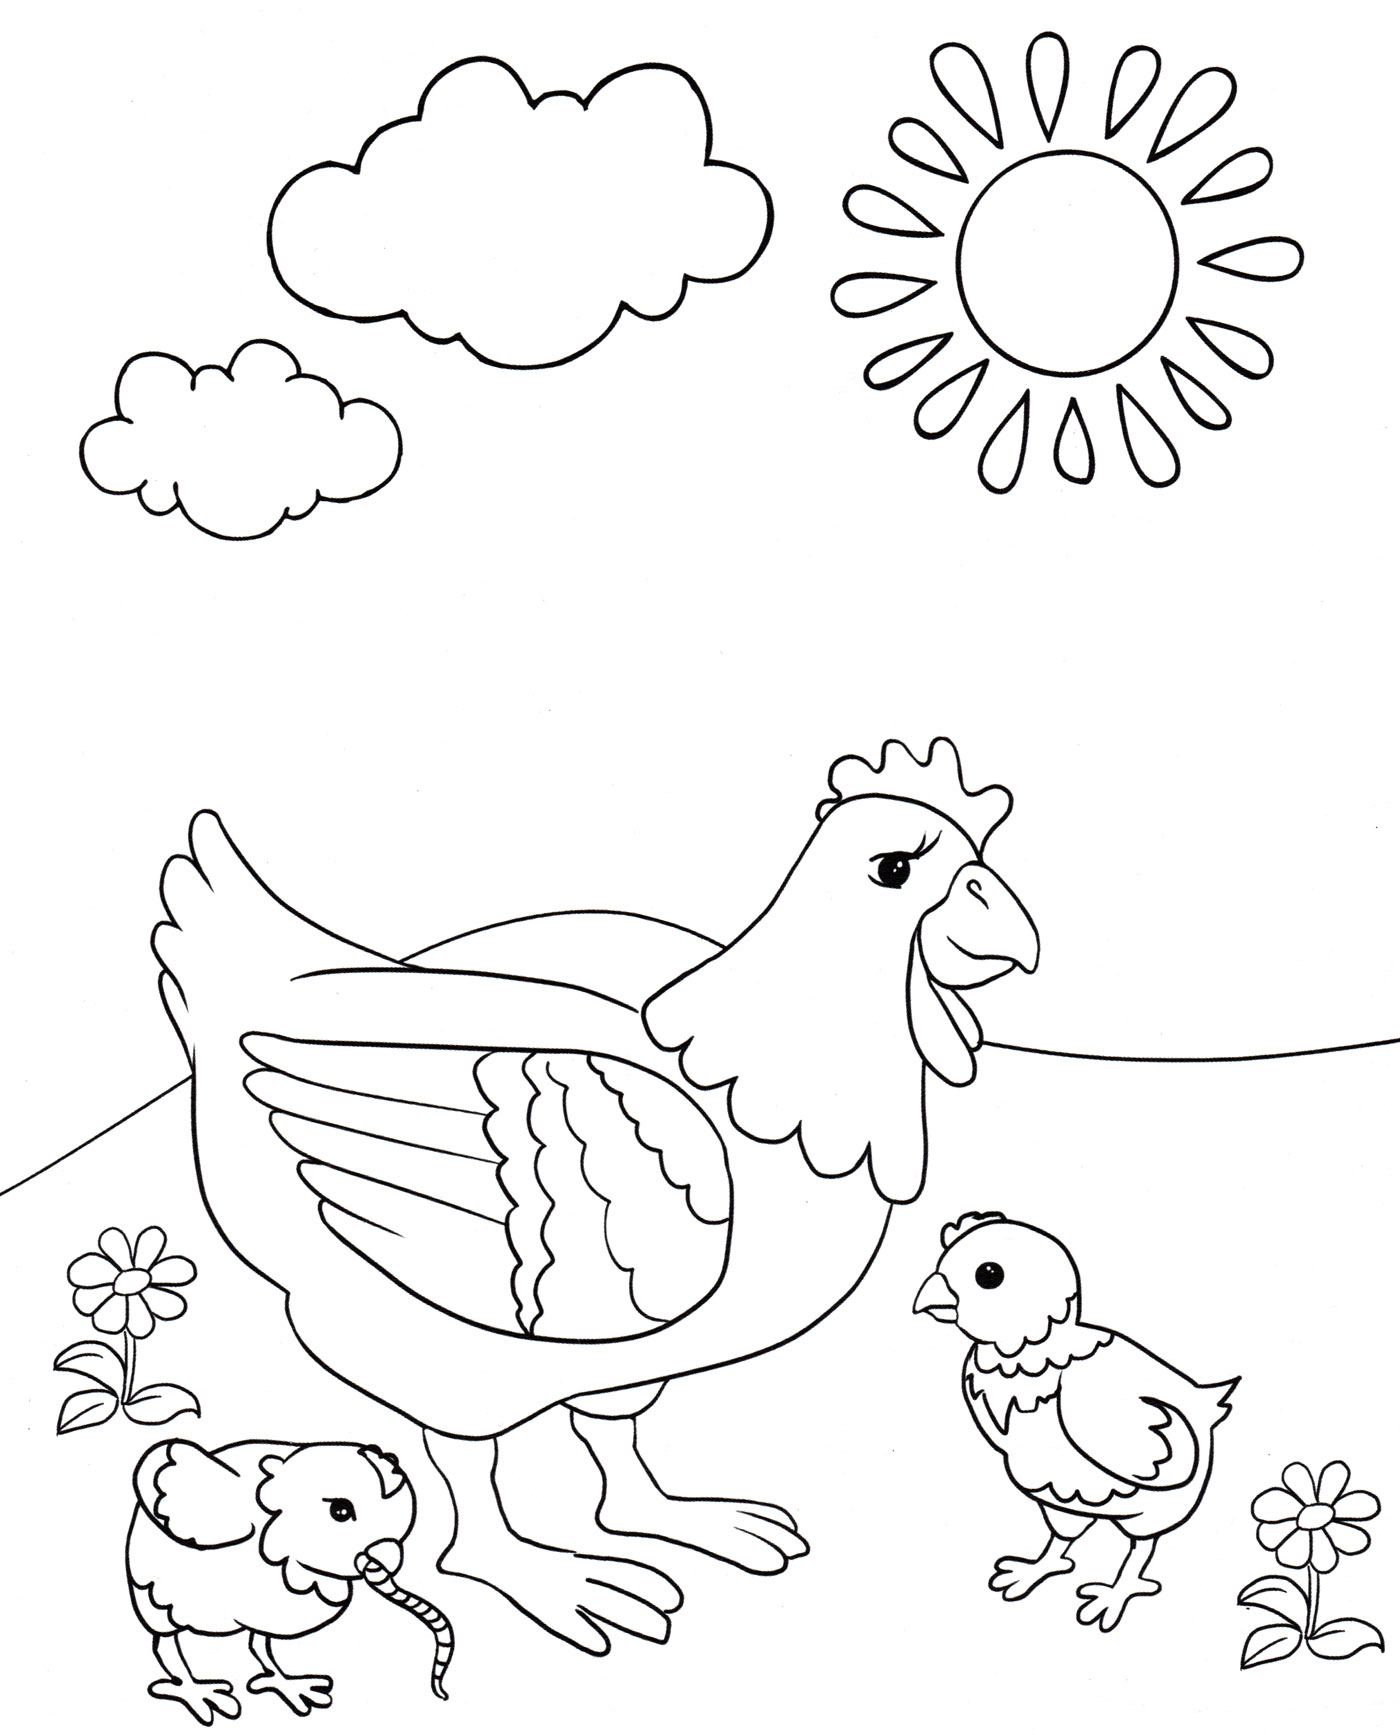 Раскраски с цыпленком: распечатать или скачать бесплатно | баштрен.рф